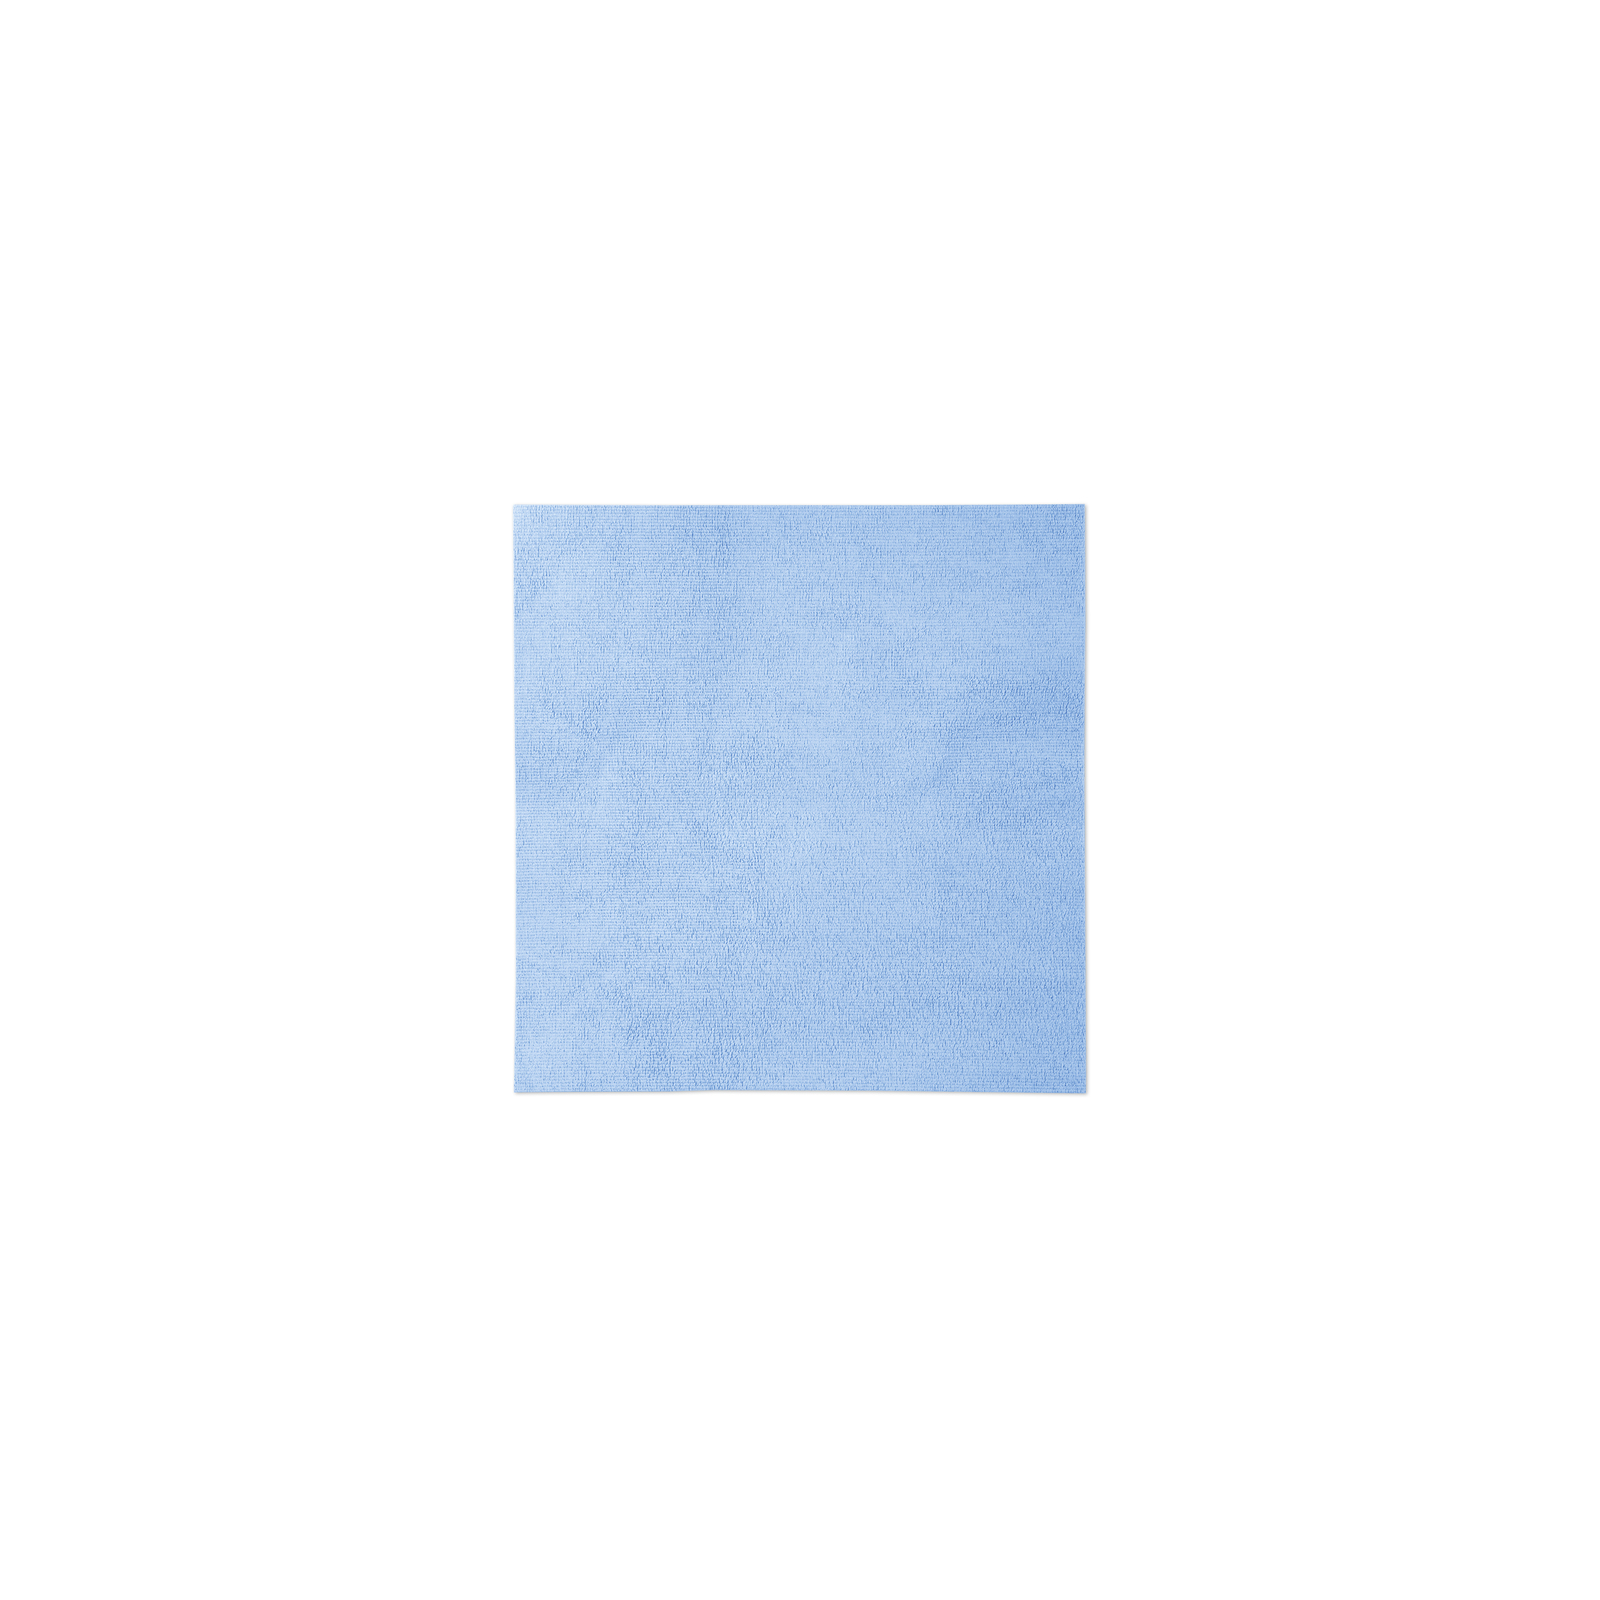 Karcher - Jeu de lingettes x 5 - 63694810